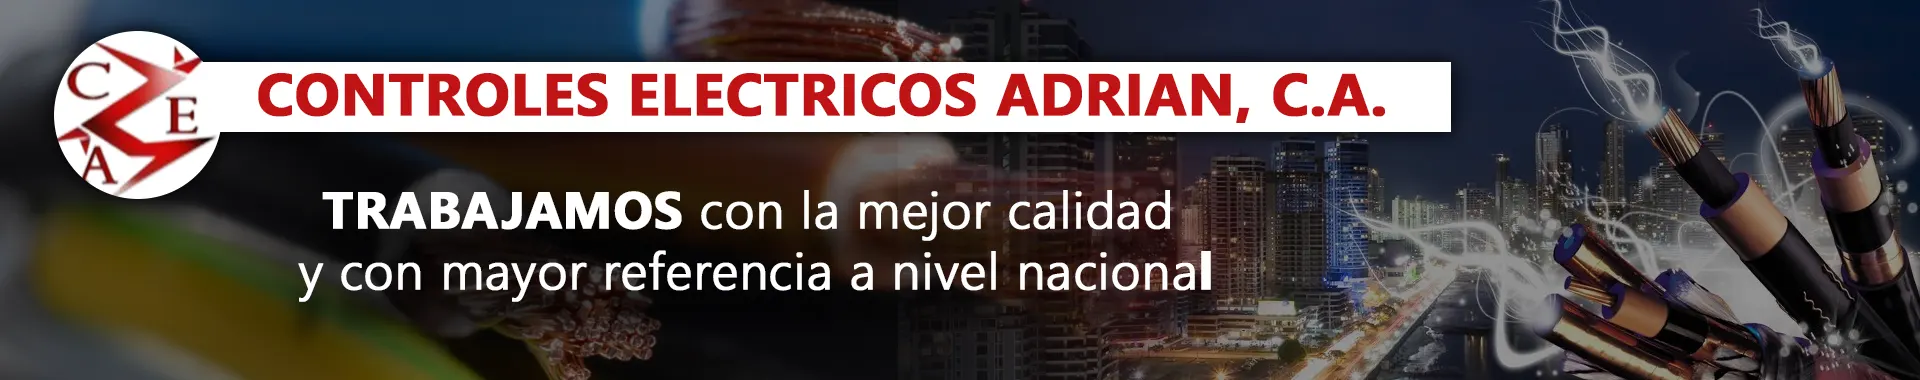 Imagen 1 del perfil de Controles Eléctricos Adrián